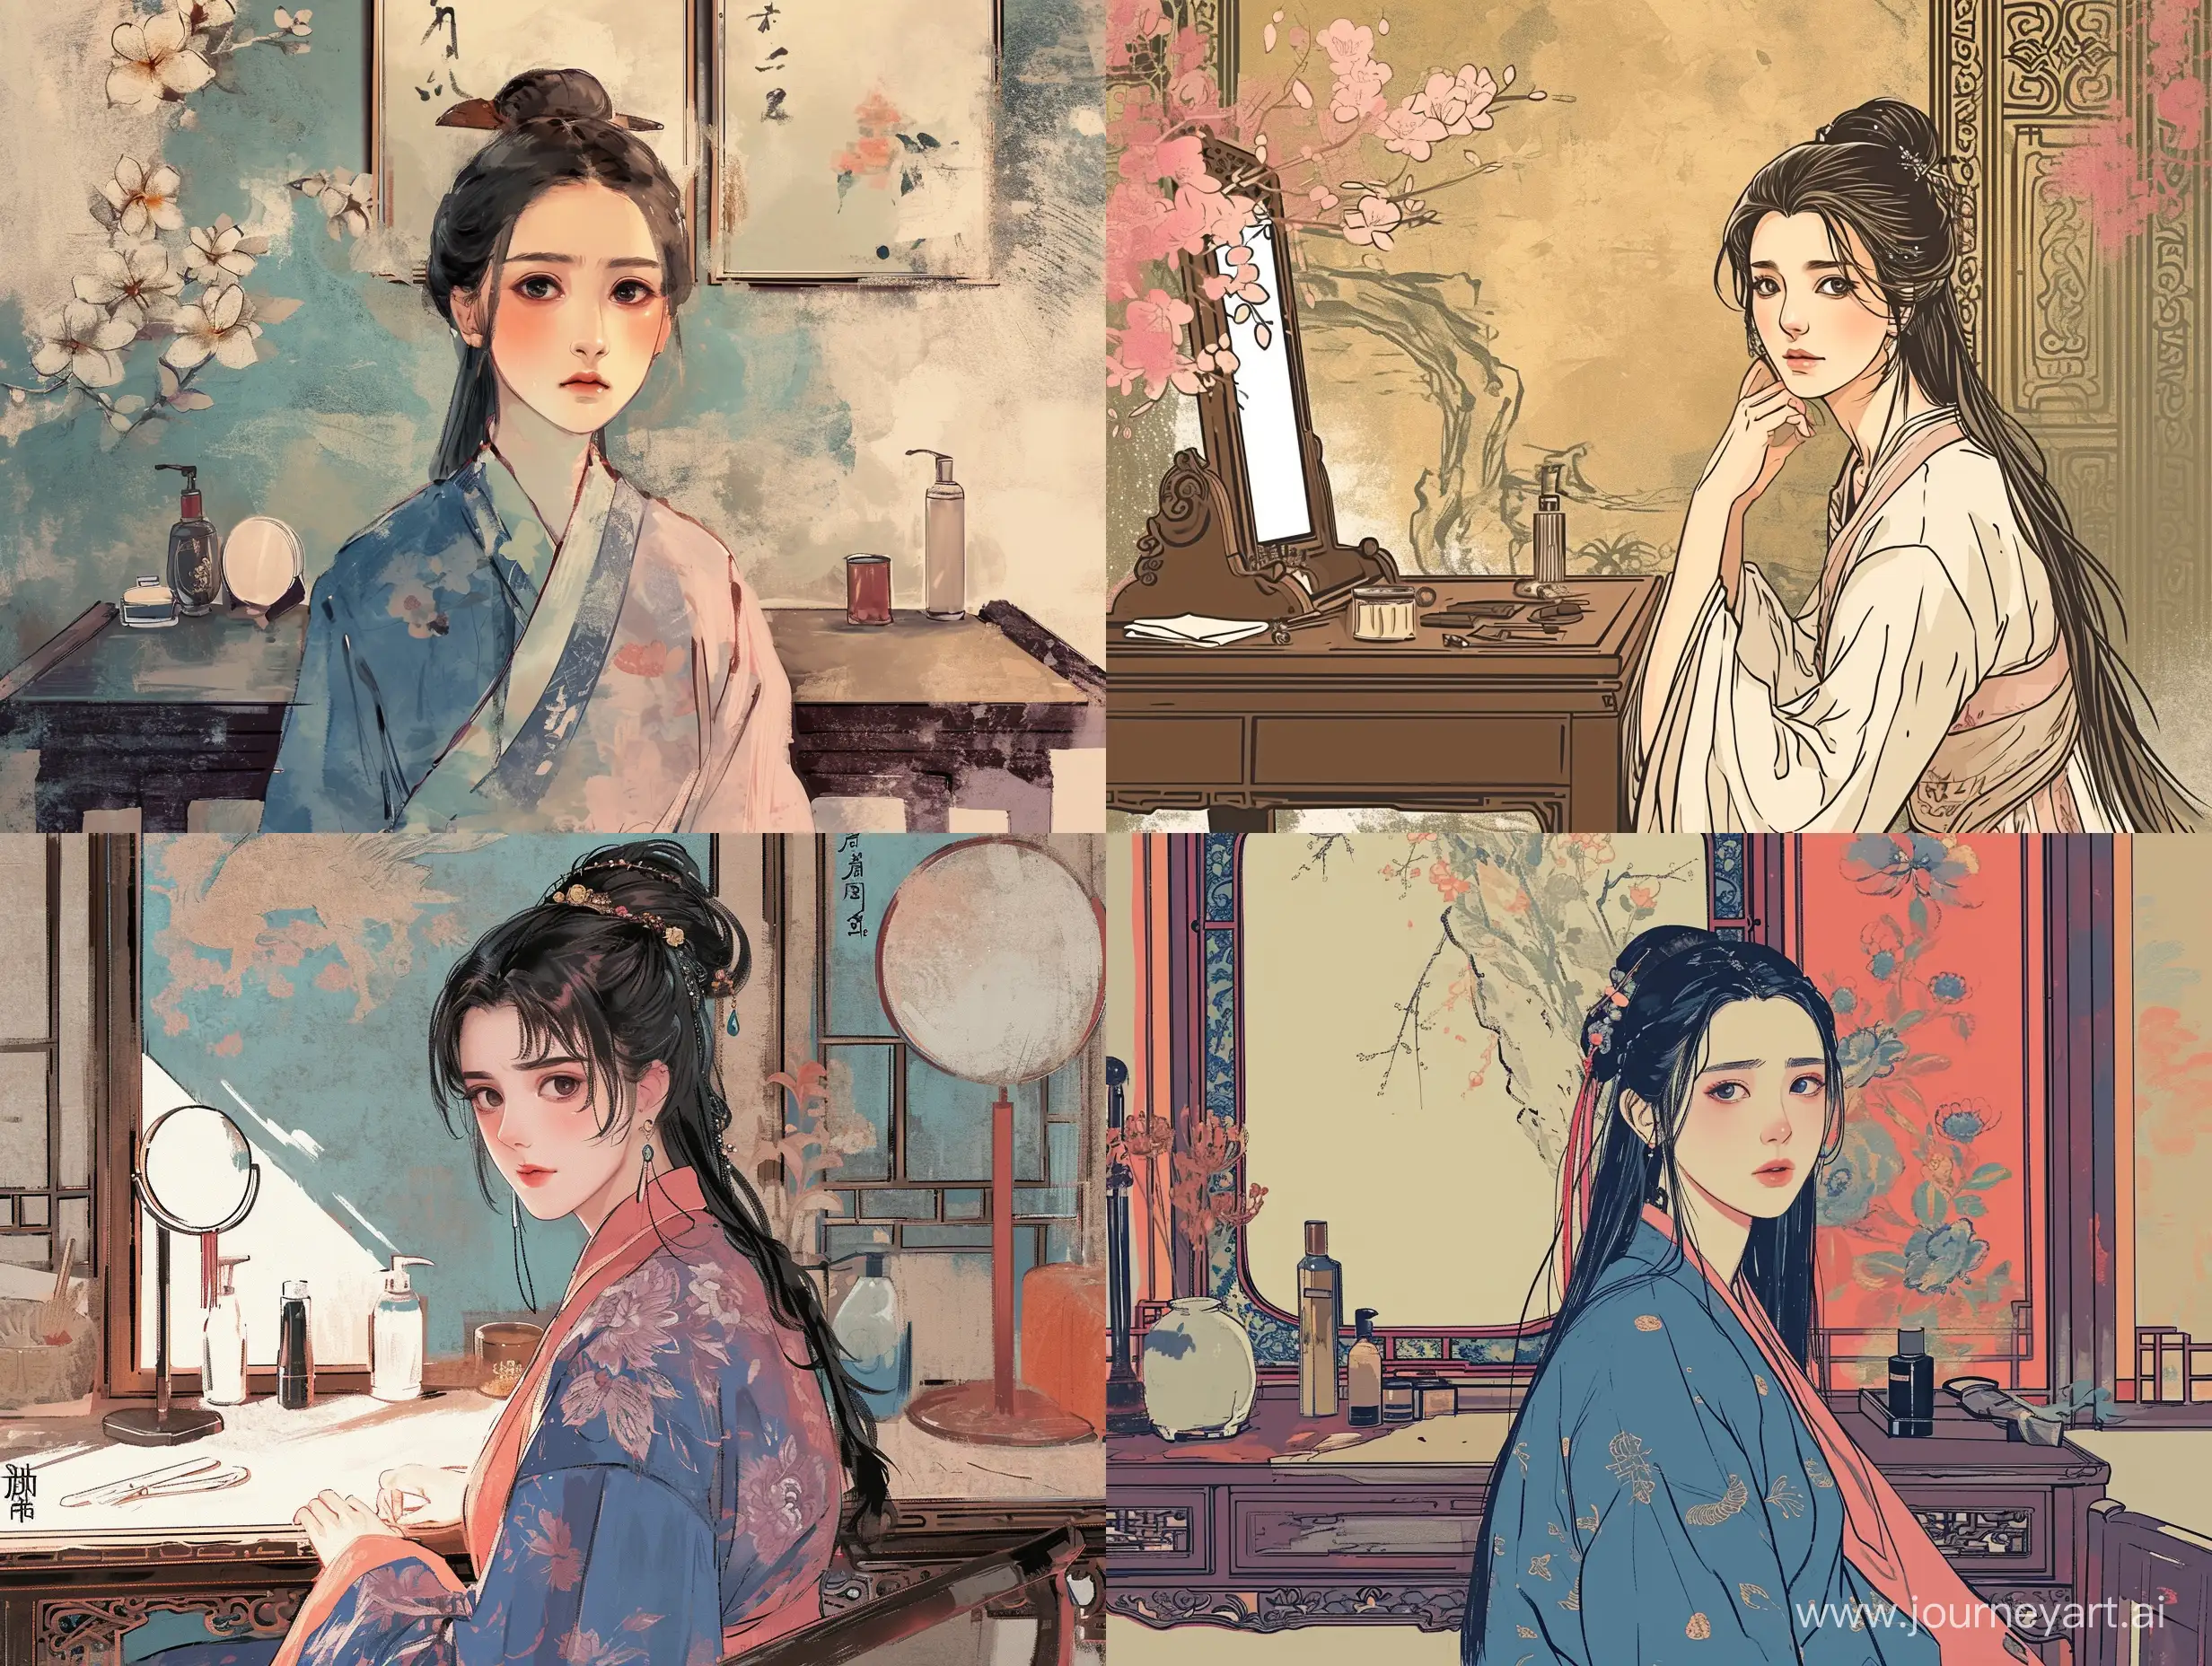 一个美女坐在梳妆台前，面容发愁，彩色中国风，水墨画风格，二次元漫画，高清，高级感，大师之作，古代，东方美学。